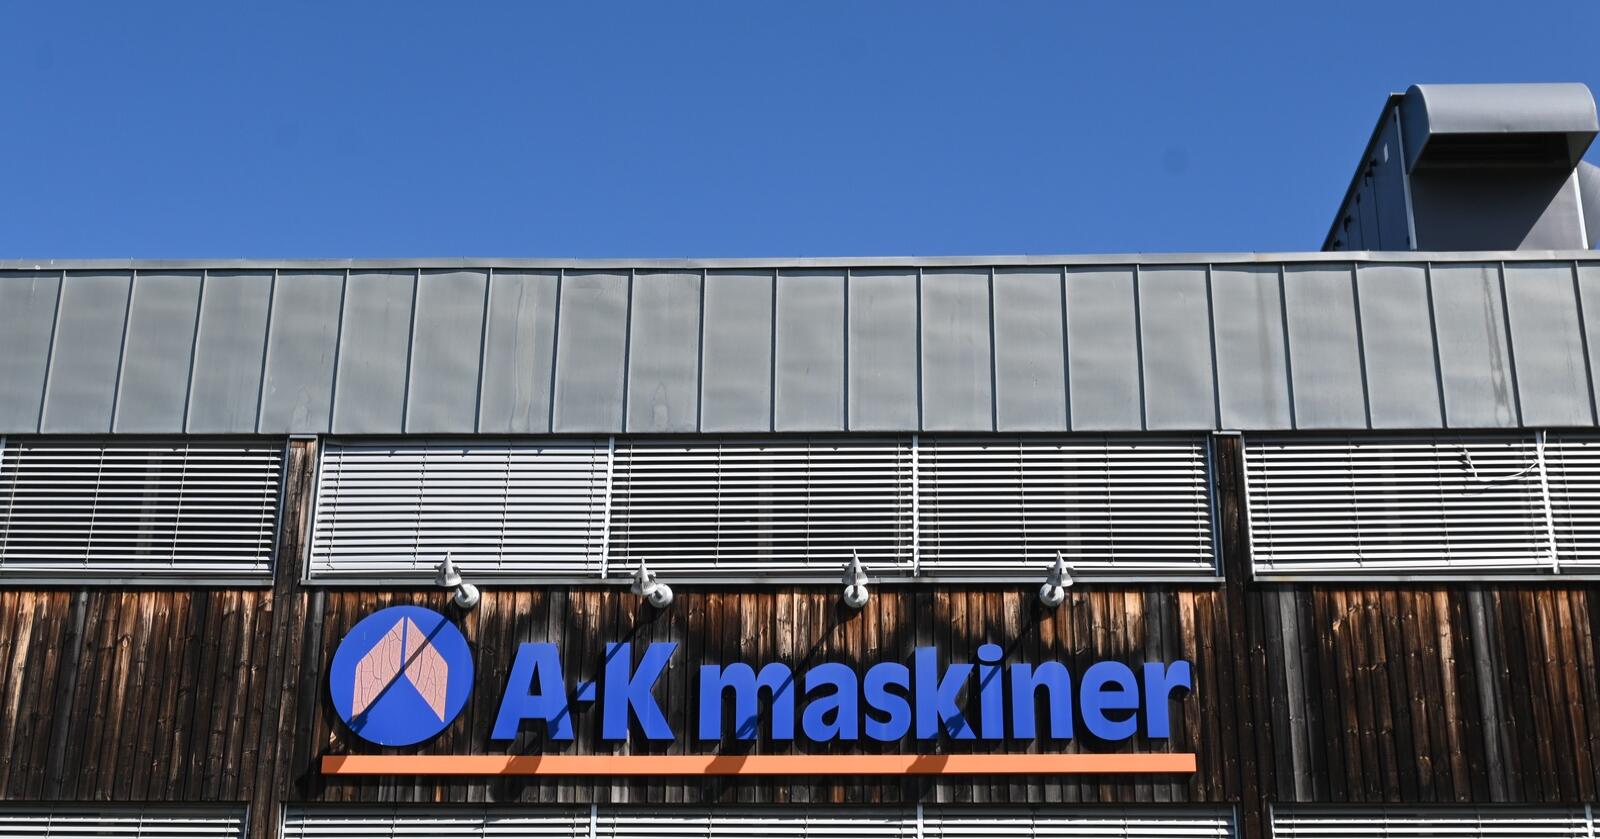 Bjarøy Handel: Etter konkursen i A-K maskiner, sikret selskapet seg konkursboet. Nå kommer gjenstander på nettauksjon.